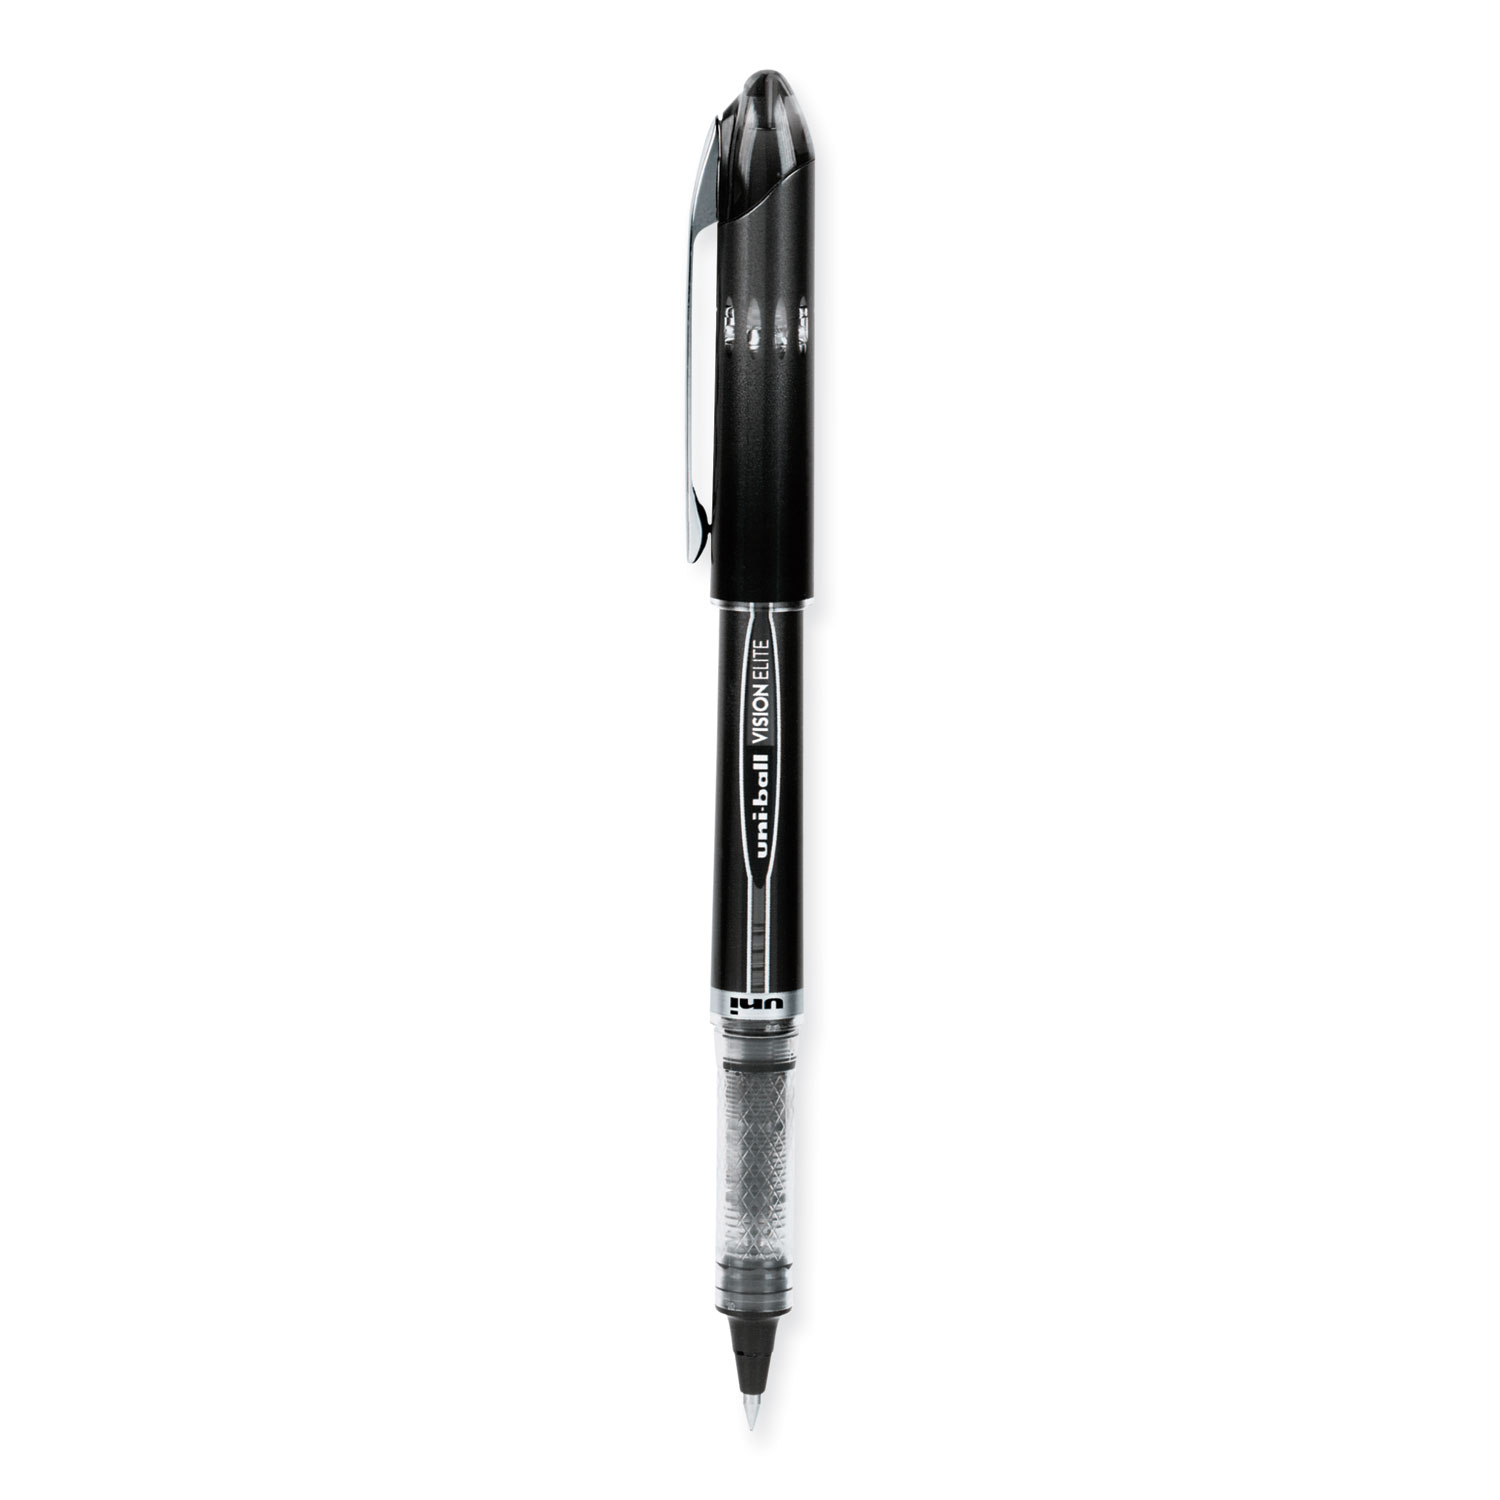 Uniball One Gel Pen 12 Pack, 0.38mm Ultra Micro Black Pens, Gel